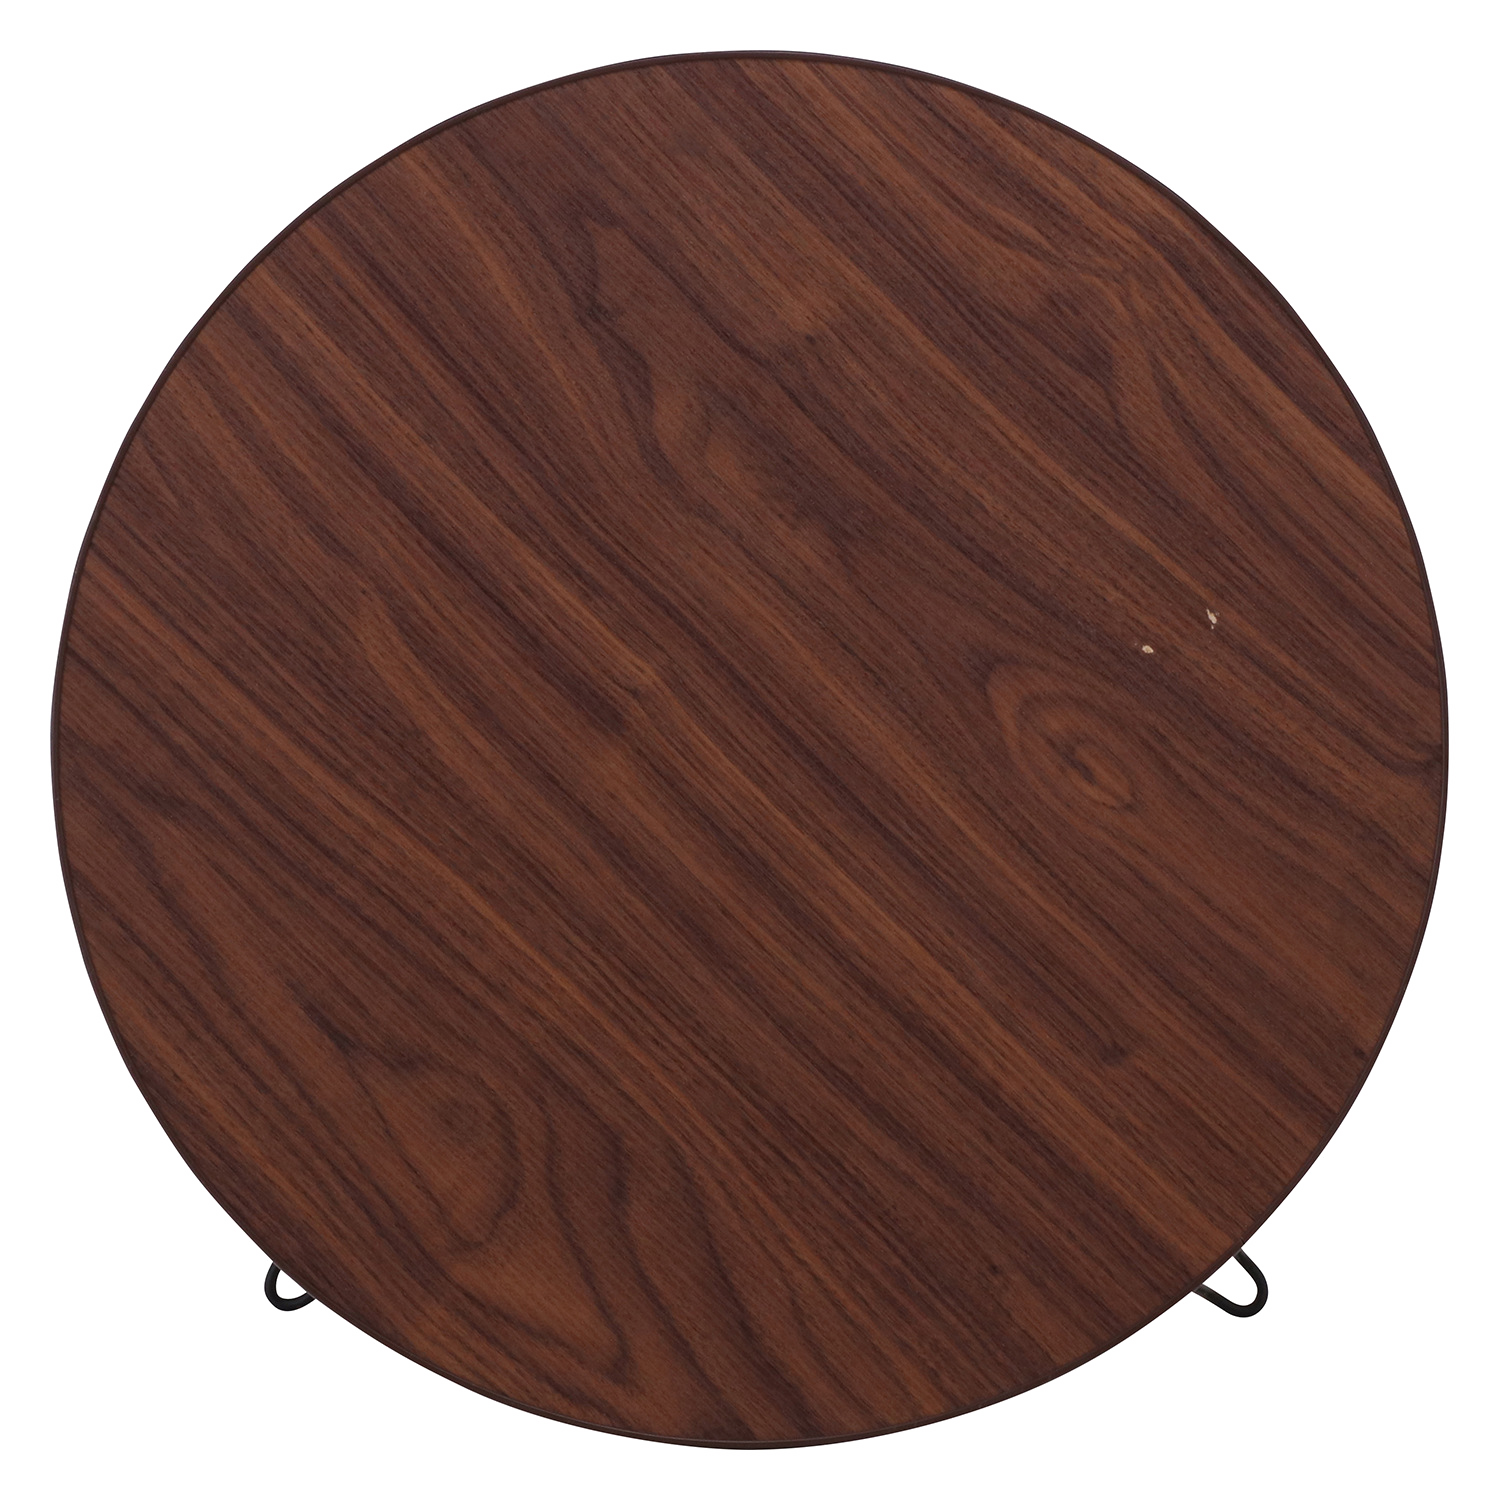 木目調のレトロ可愛いテーブル 持ち運びも楽々 ローテーブル 丸60cmの詳細 カヴァース